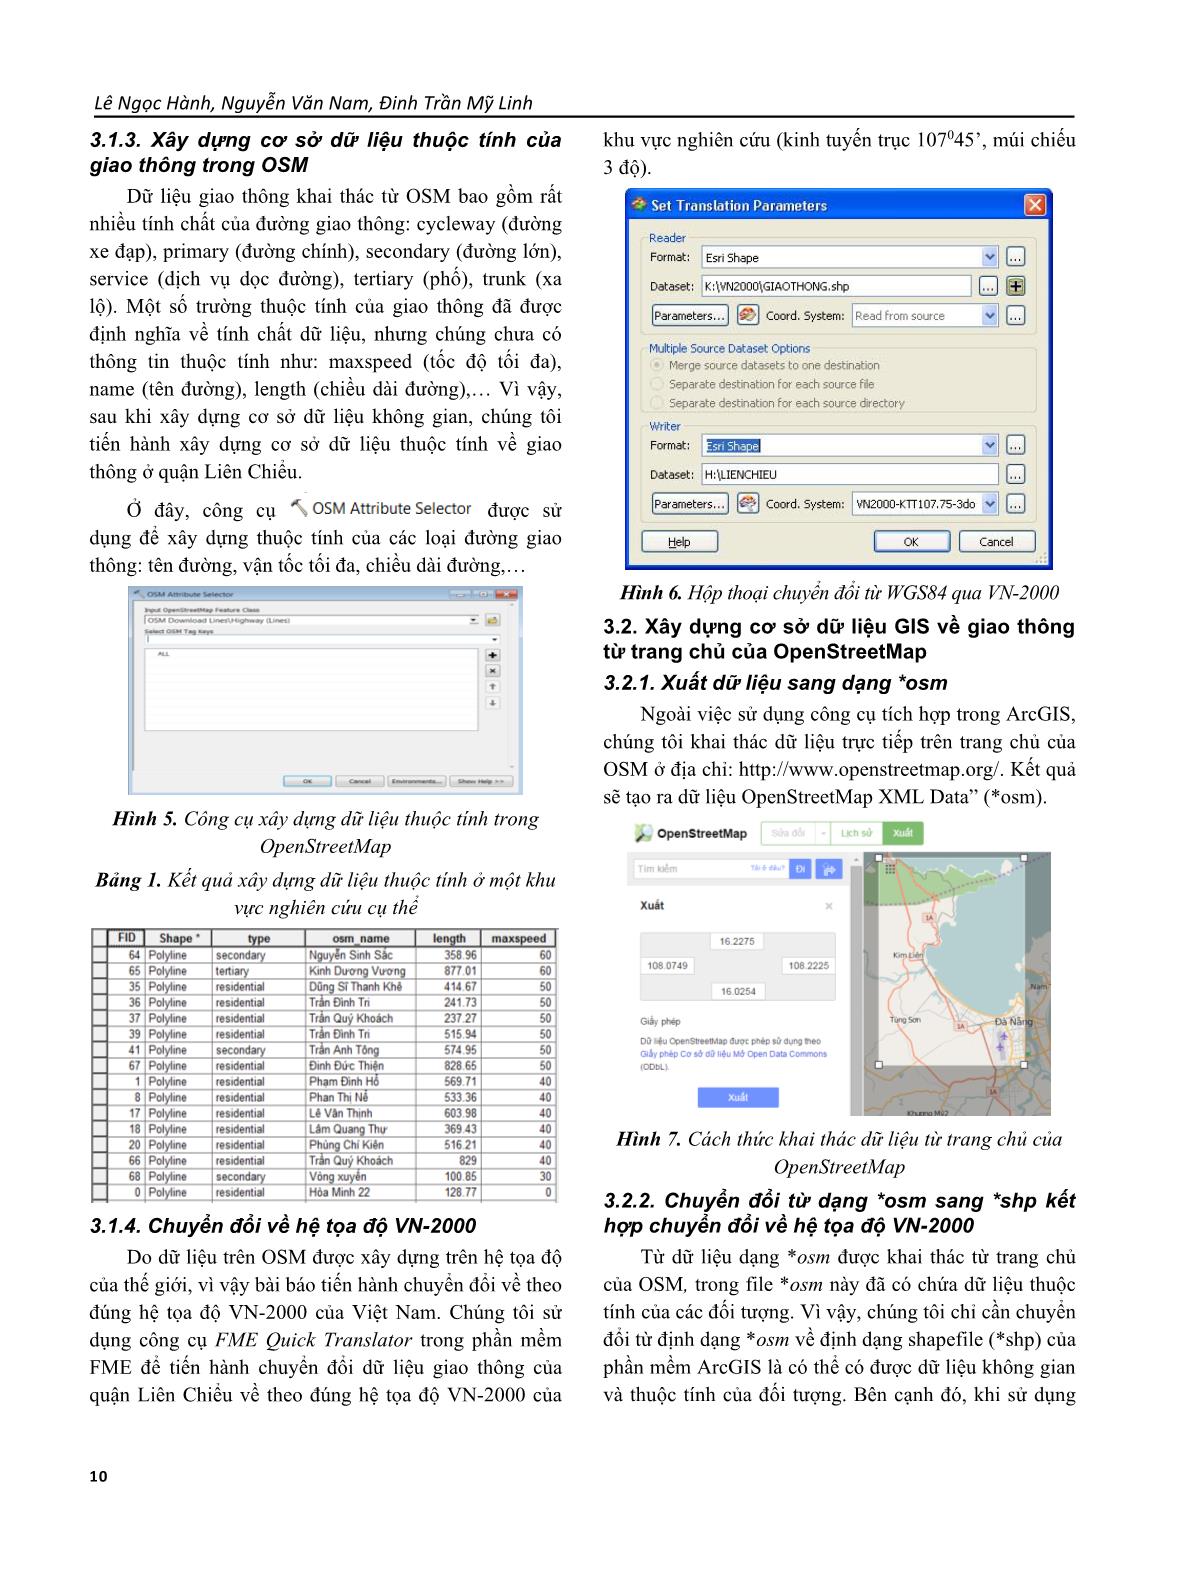 Ứng dụng OpenStreetMap để xây dựng cơ sở dữ liệu giao thông ở quận Liên Chiểu - Thành phố Đà Nẵng trang 4